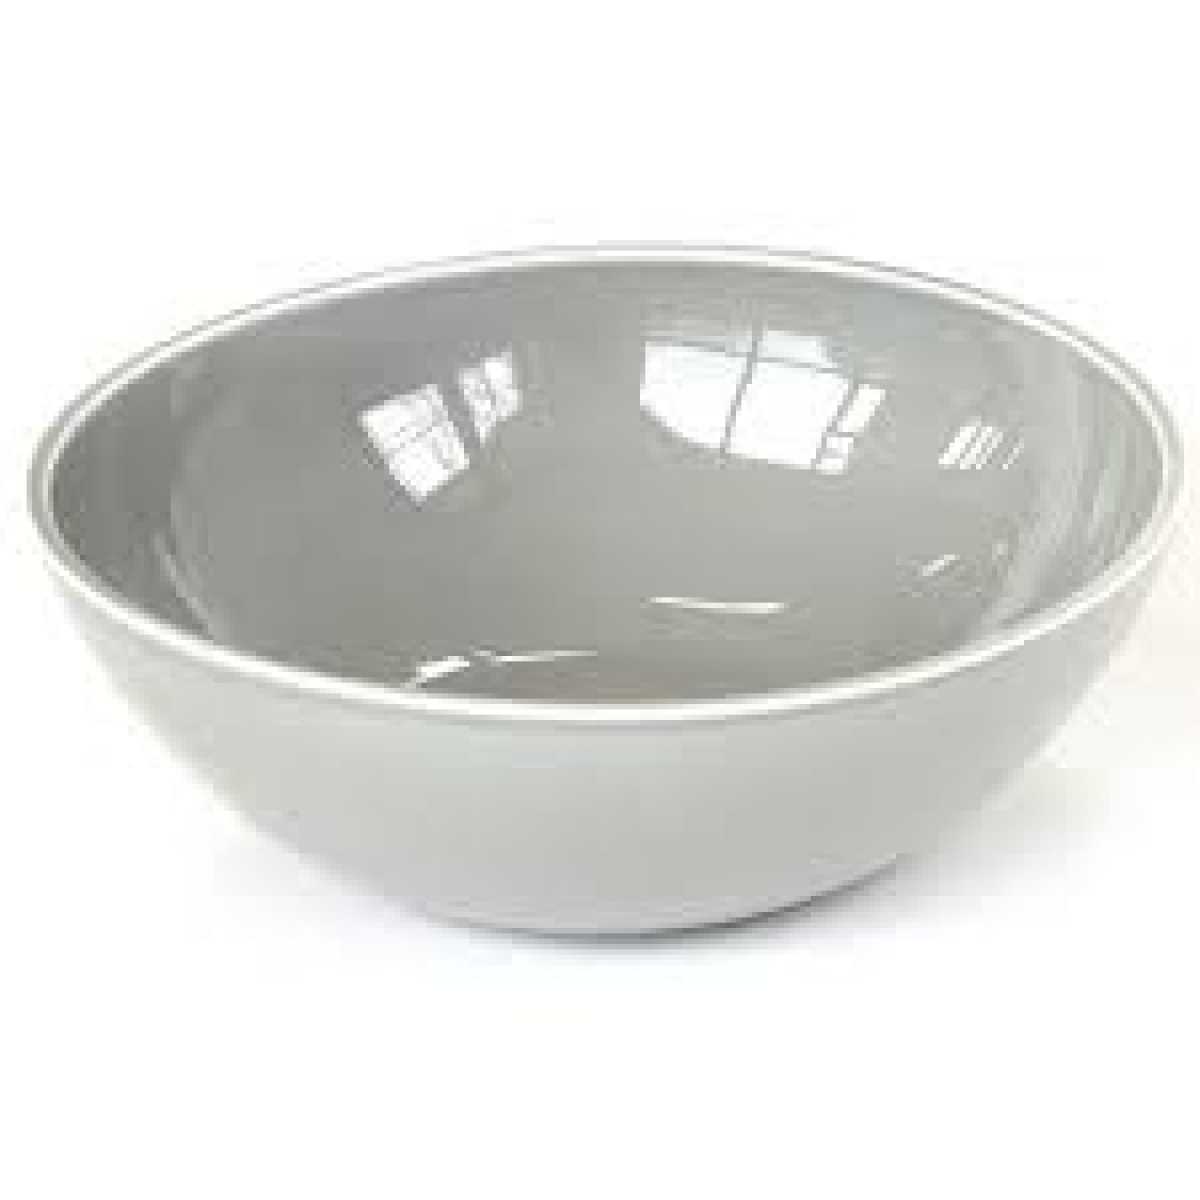 CRASTER Tilt Light Grey Bowl – Large